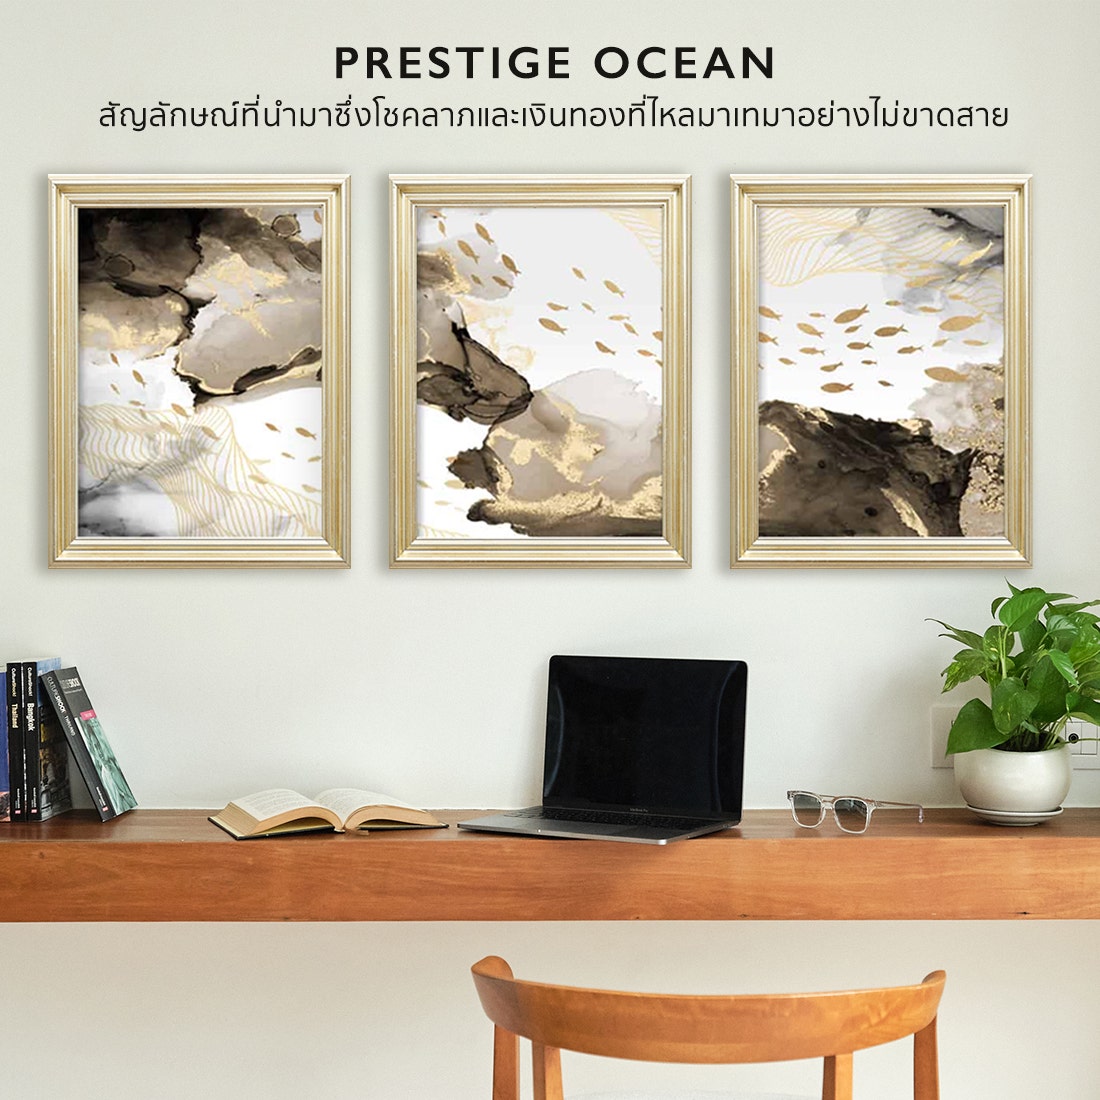 รูปพร้อมกรอบ DoseArt รุ่น Prestige Ocean Frame C13 120x50 cm.-01